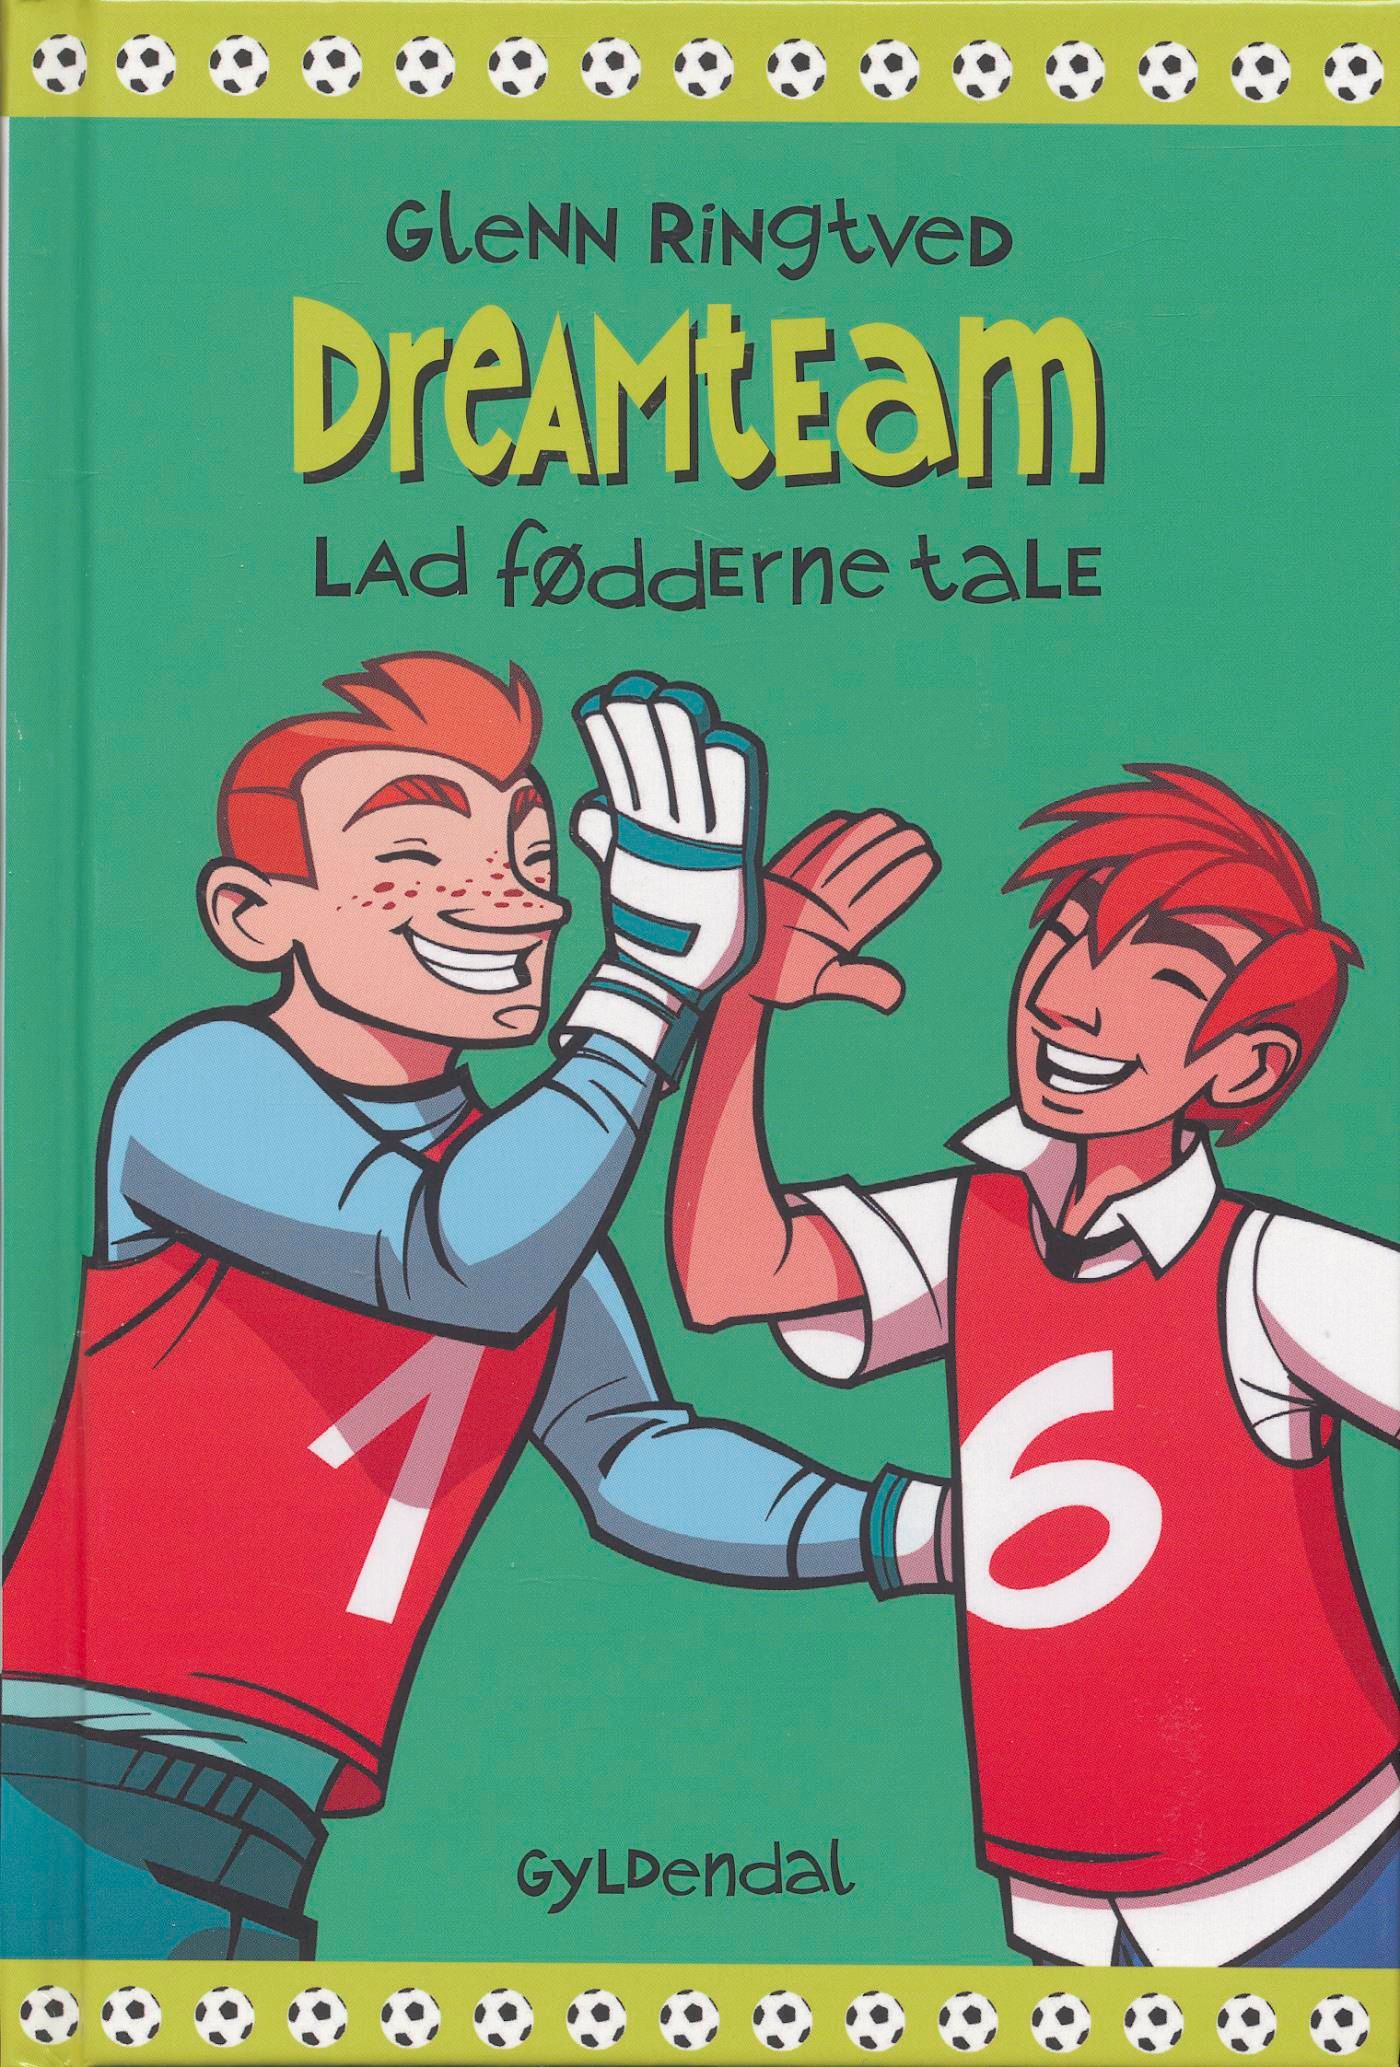 Lad fødderne tale (Dreamteam 2), e-bok av Glenn Ringtved